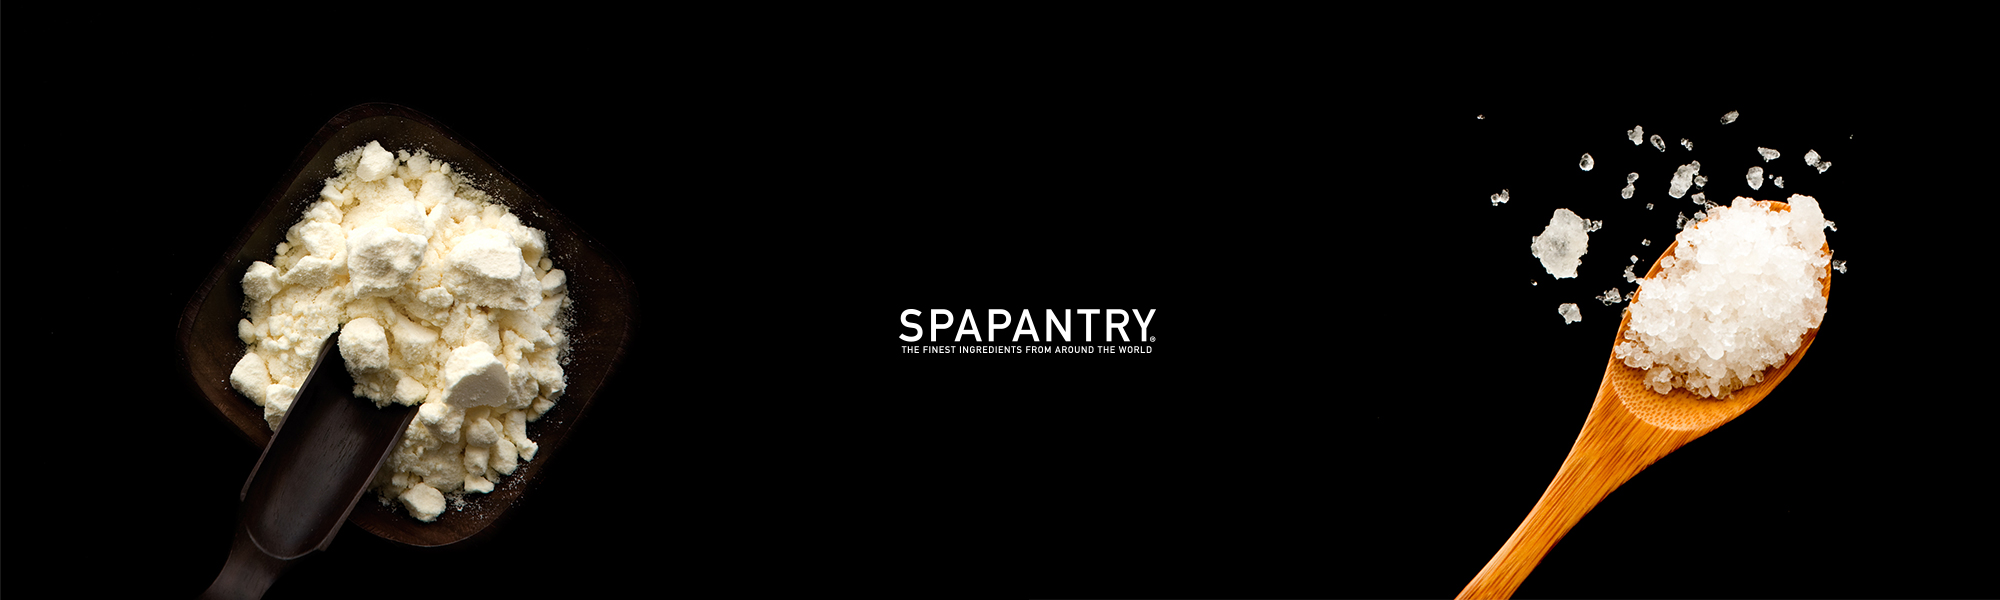 SpaPantry_Footer